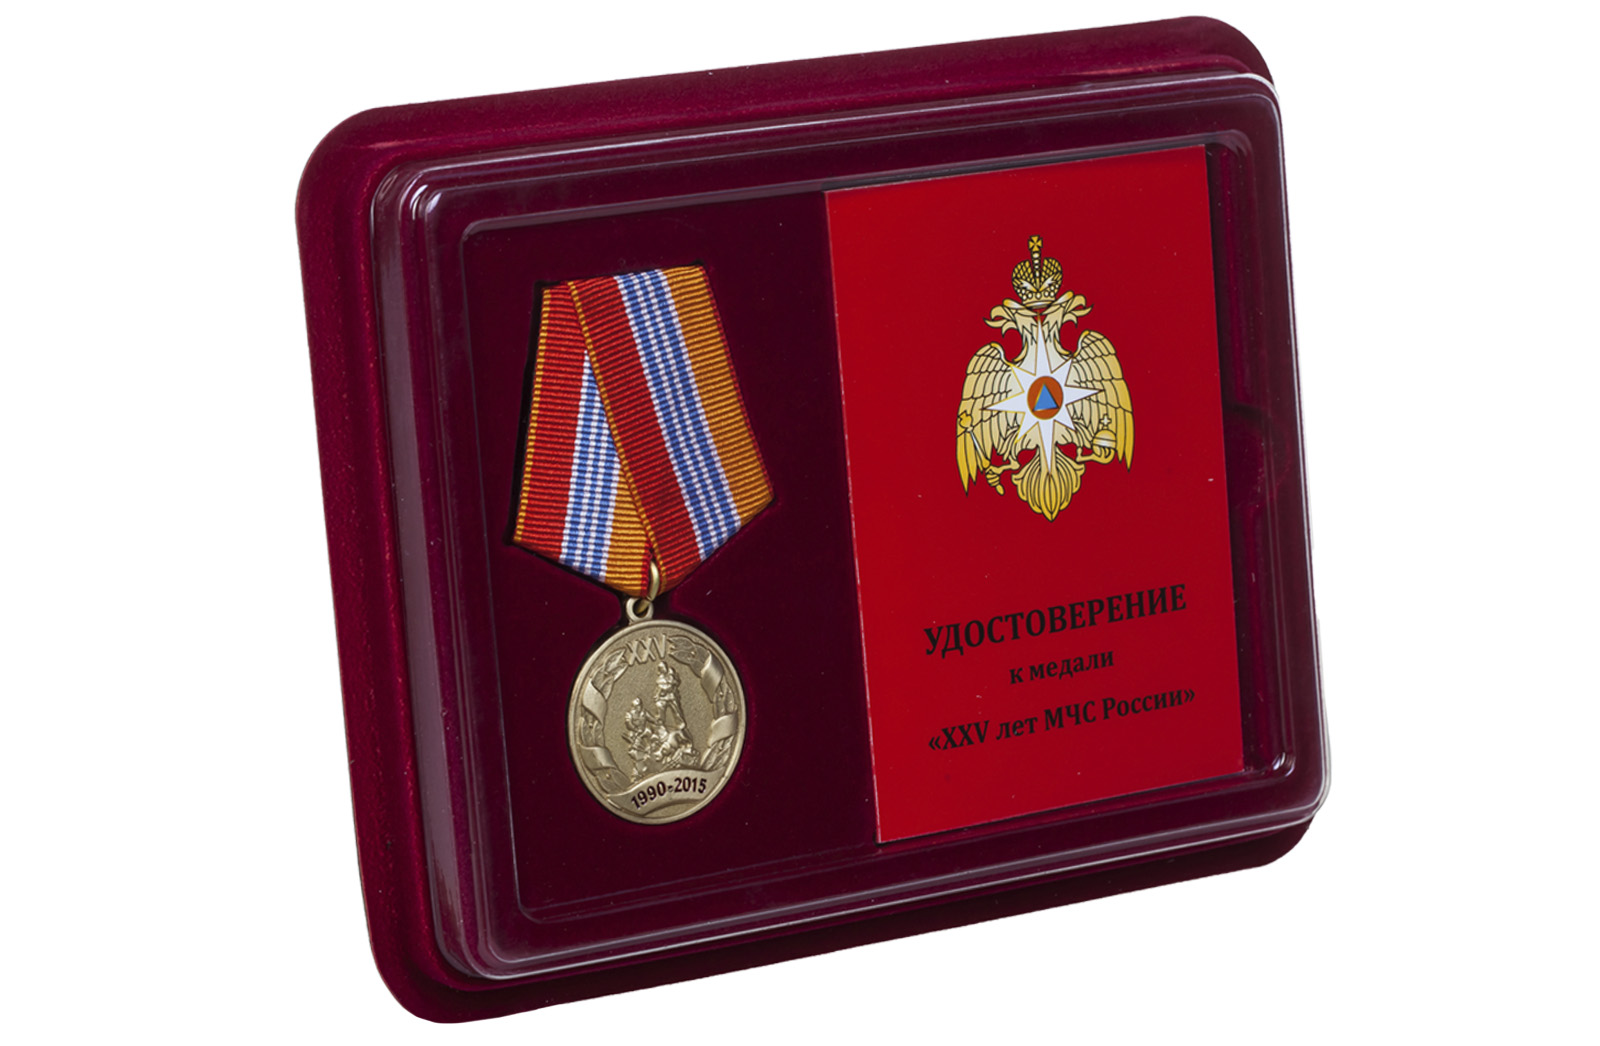 Купить юбилейную медаль 25 лет МЧС РФ в подарок мужчине